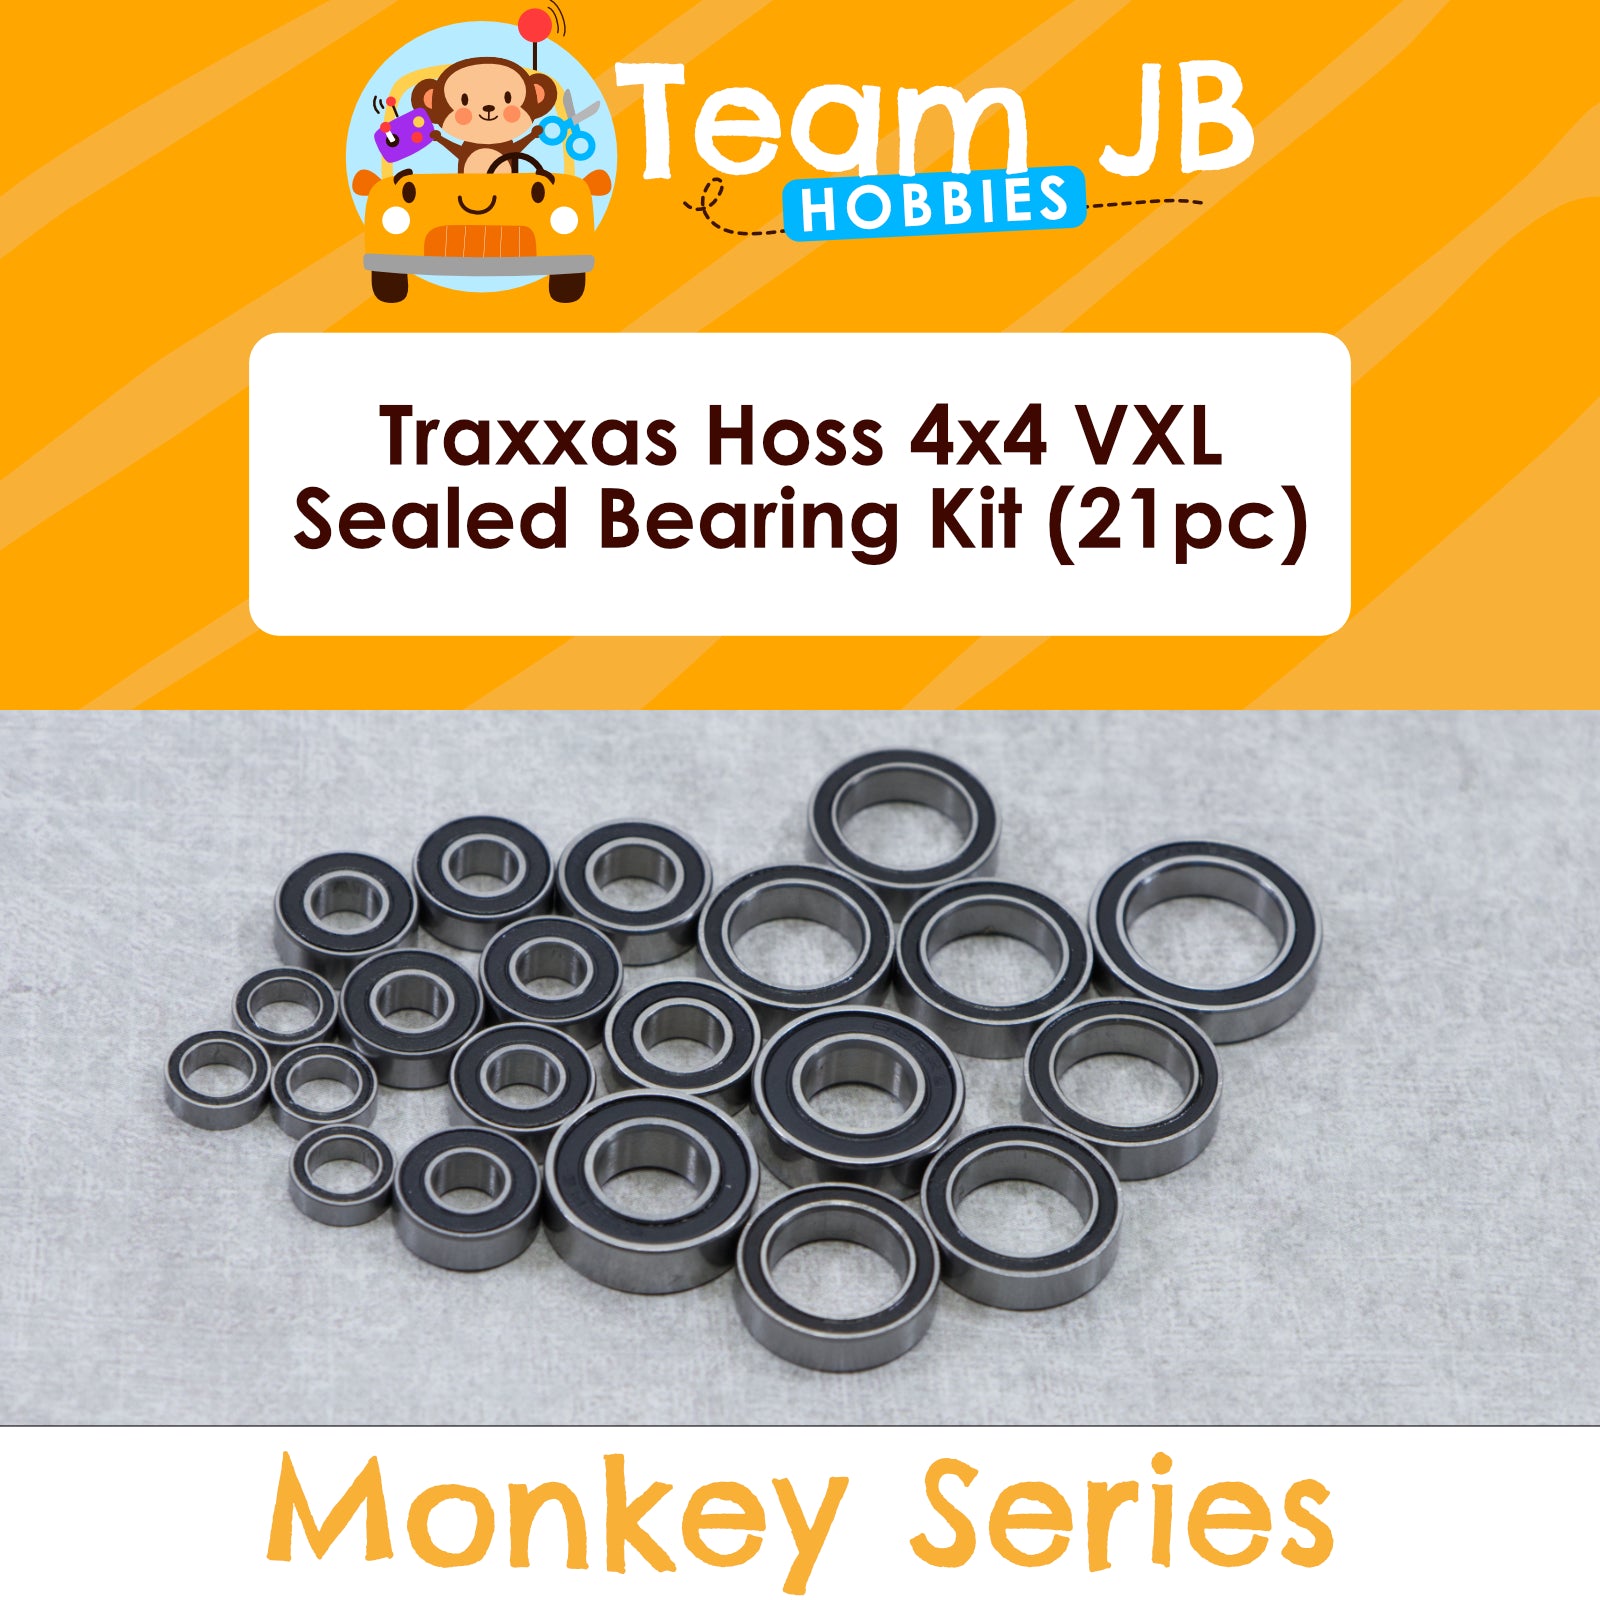 Traxxas Hoss 4x4 VXL - Sealed Bearing Kit